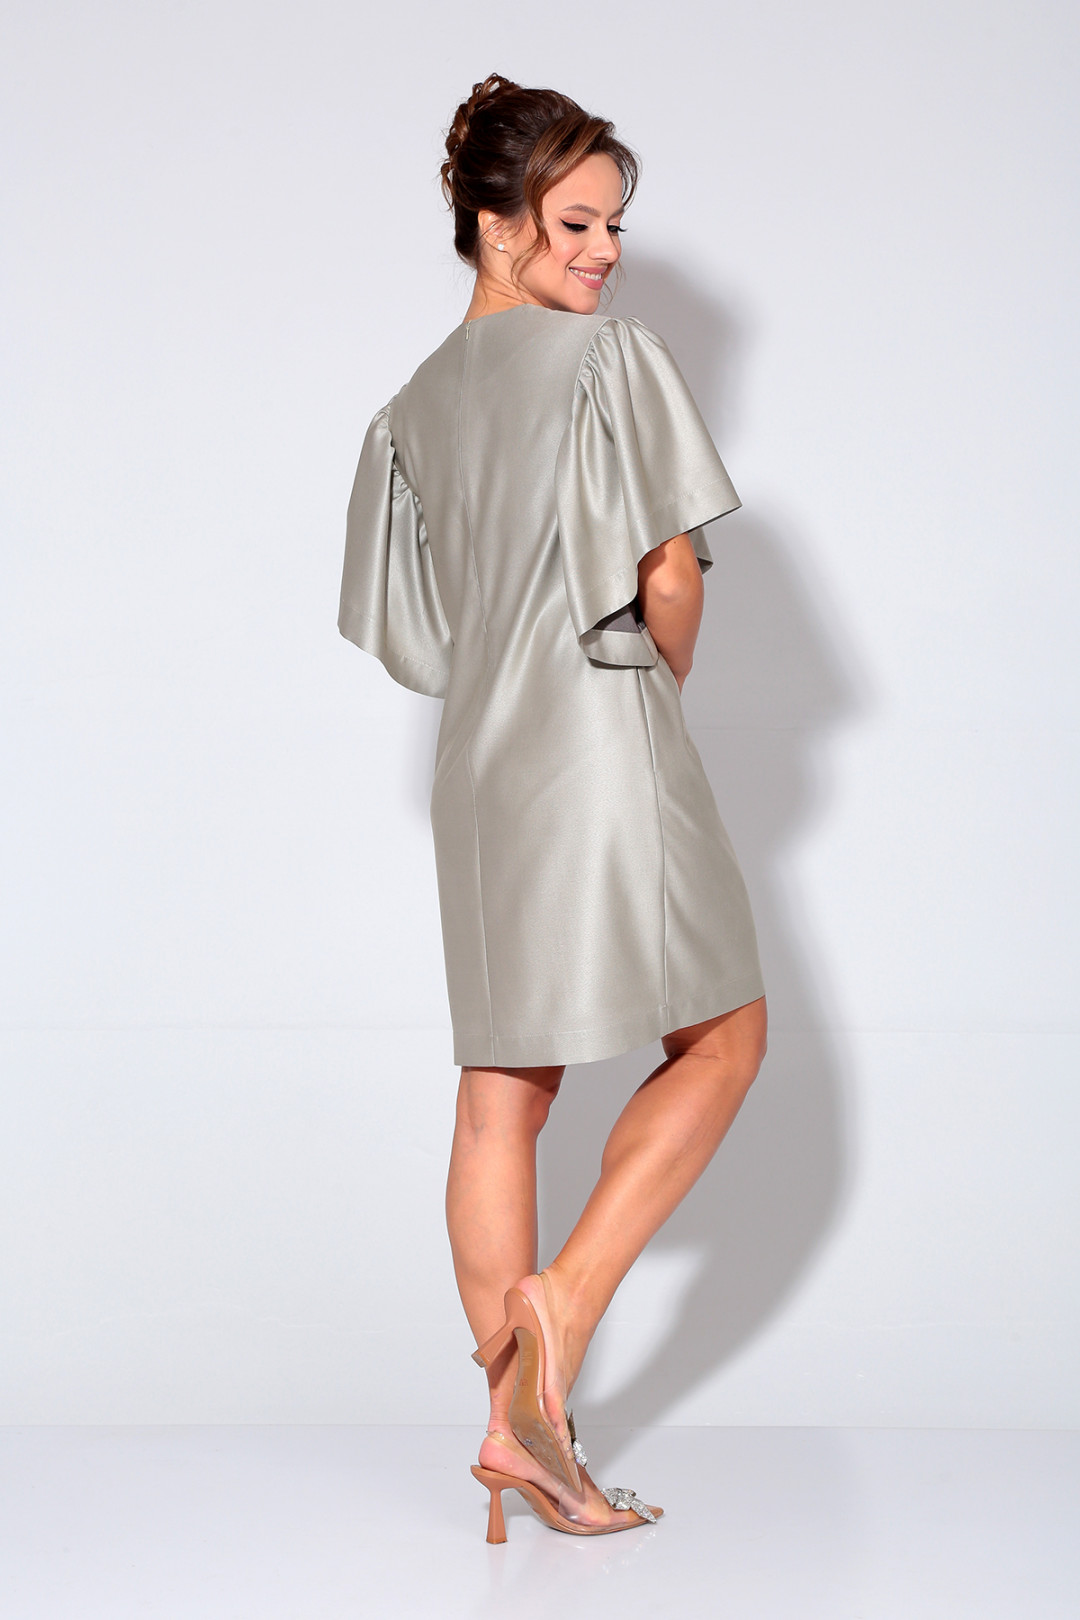 Платье Лиона-Стиль 870 бежево-серебристый